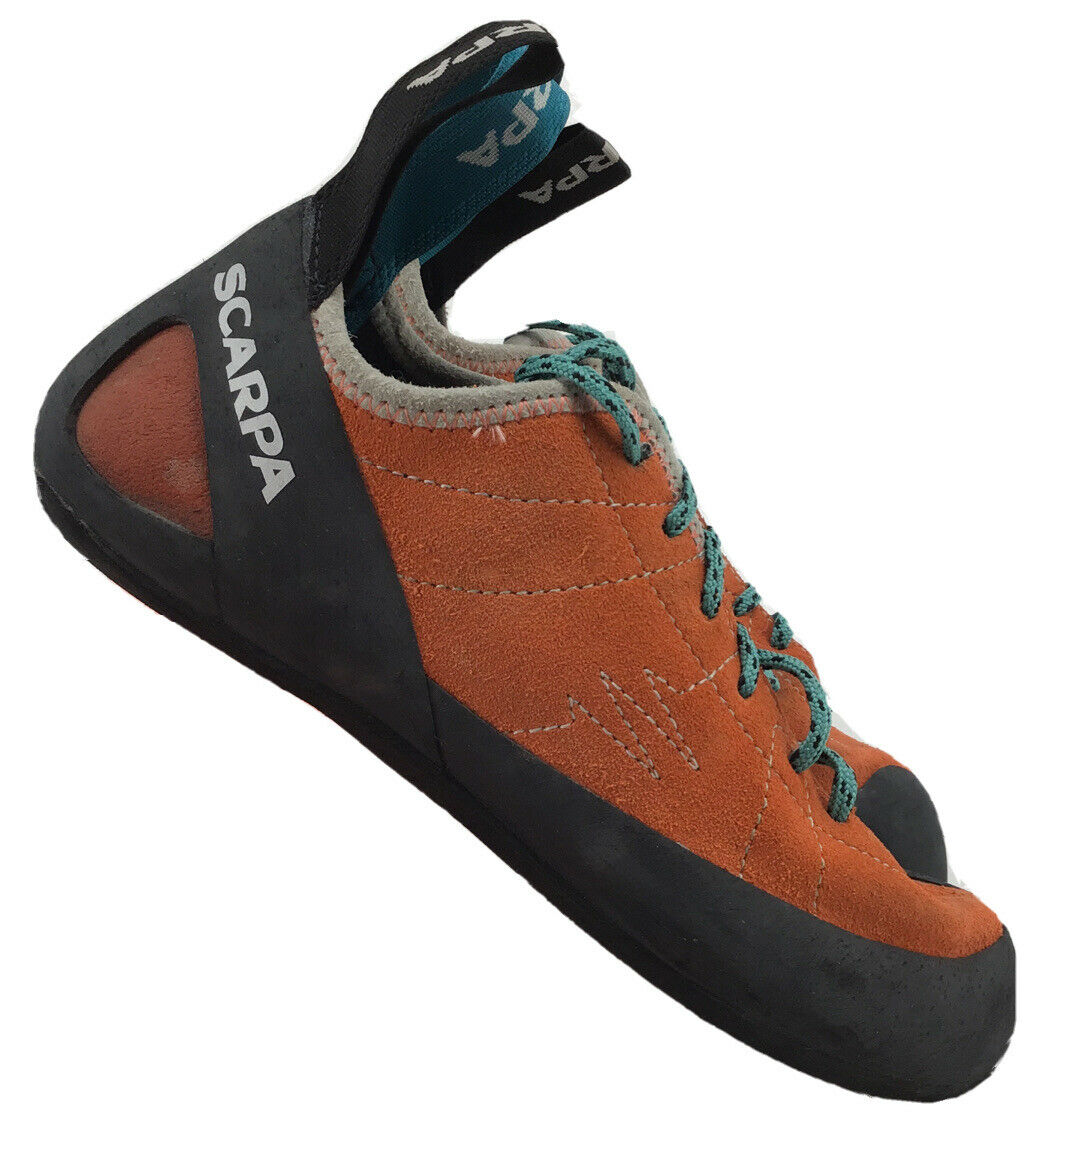 Scarpa Helix Climbing Shoe Women 6.5 Men 5.5 R304